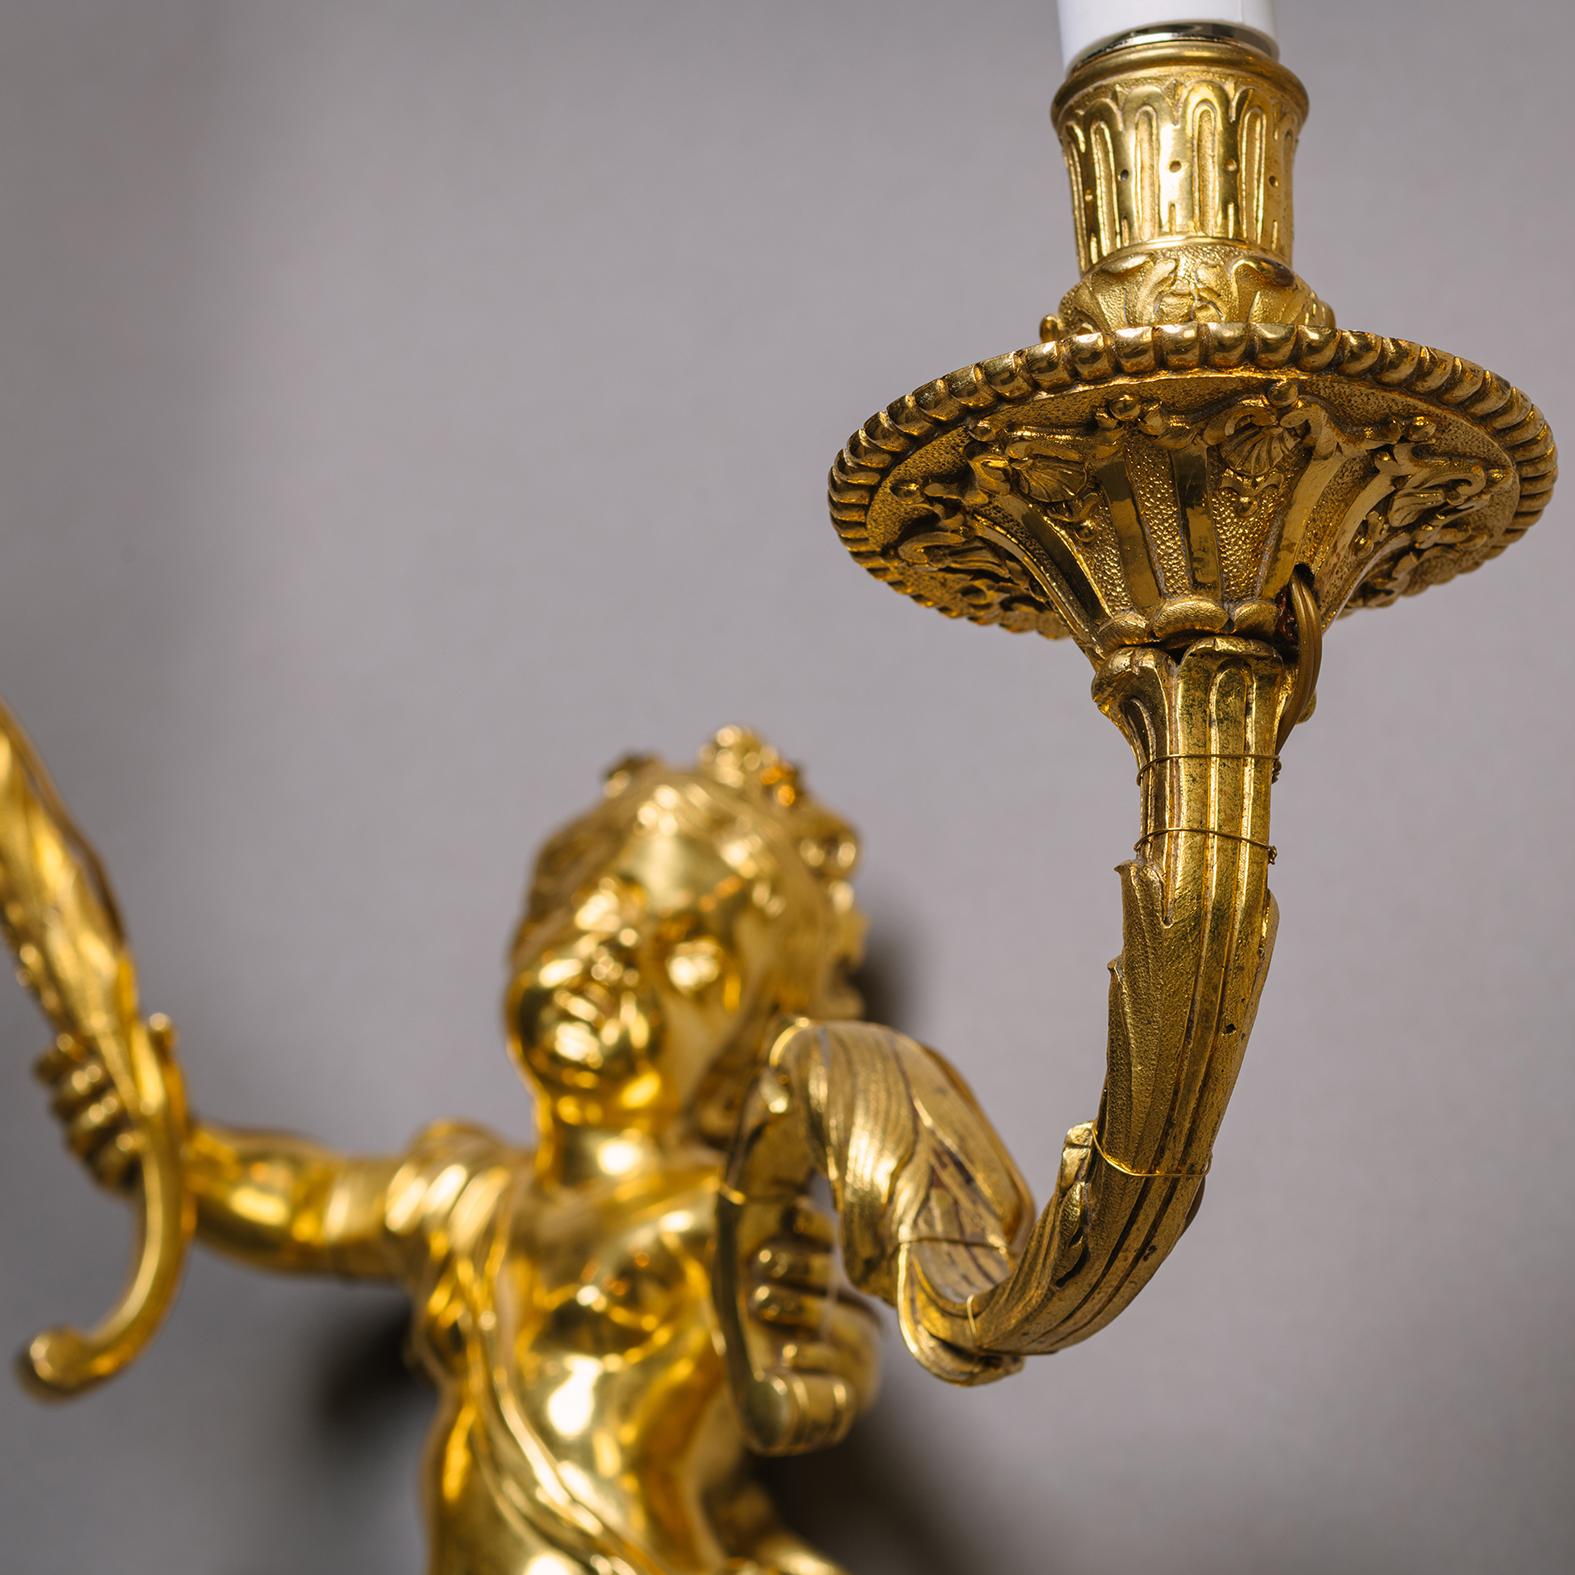 Ein Paar vergoldete Bronzewandapplikationen im Louis-XIV-Stil mit zwei Leuchten.

Jedes Modell stellt einen Cherub dar, der aus einem mit Blattwerk geschmückten Bügel herausragt und einen 